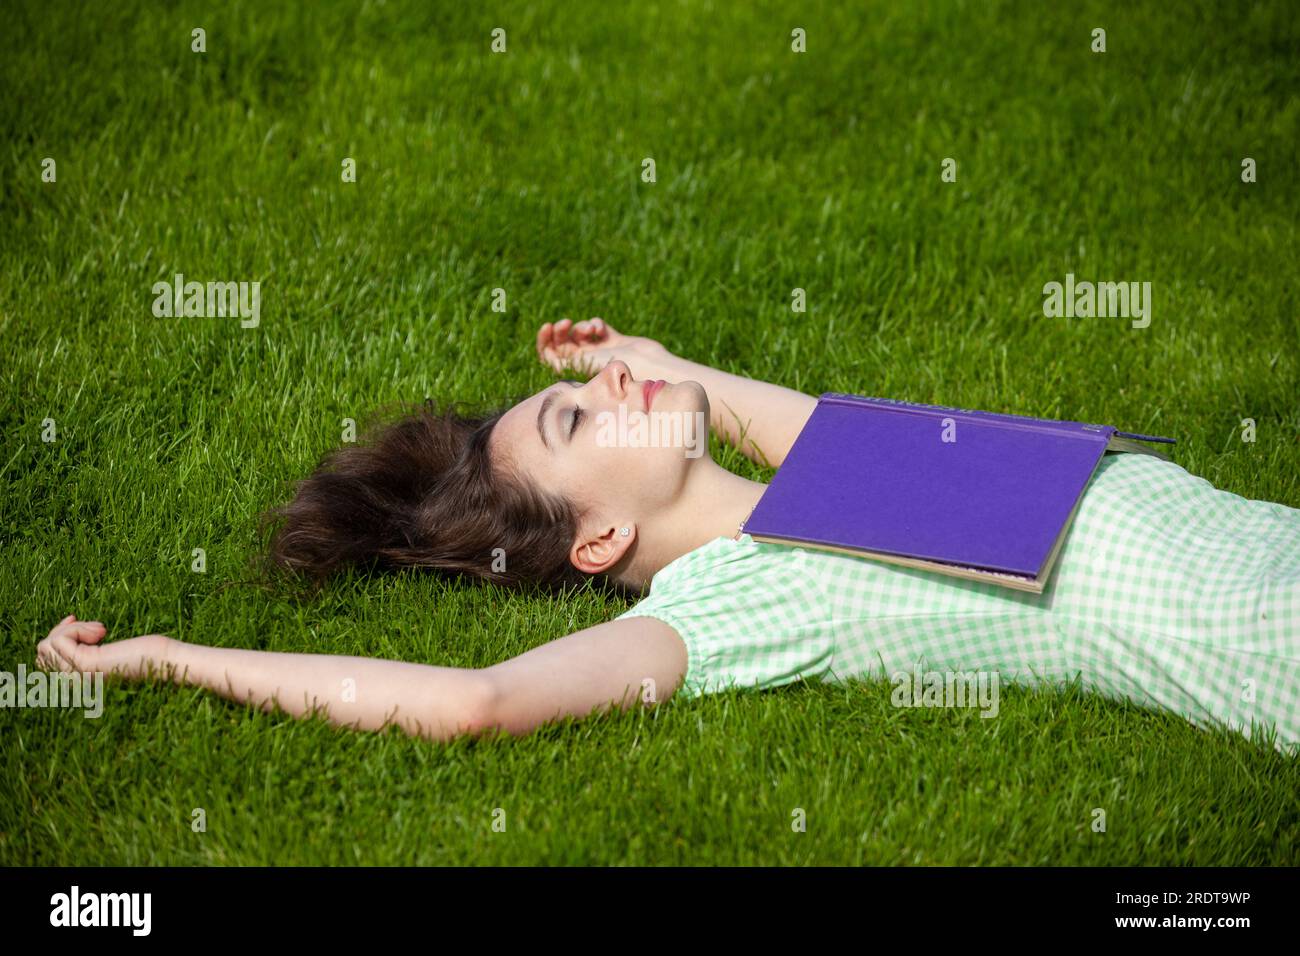 Una giovane donna sdraiata sulla schiena con le braccia tese. Indossa un vestito estivo e ha un libro sul petto. Foto Stock